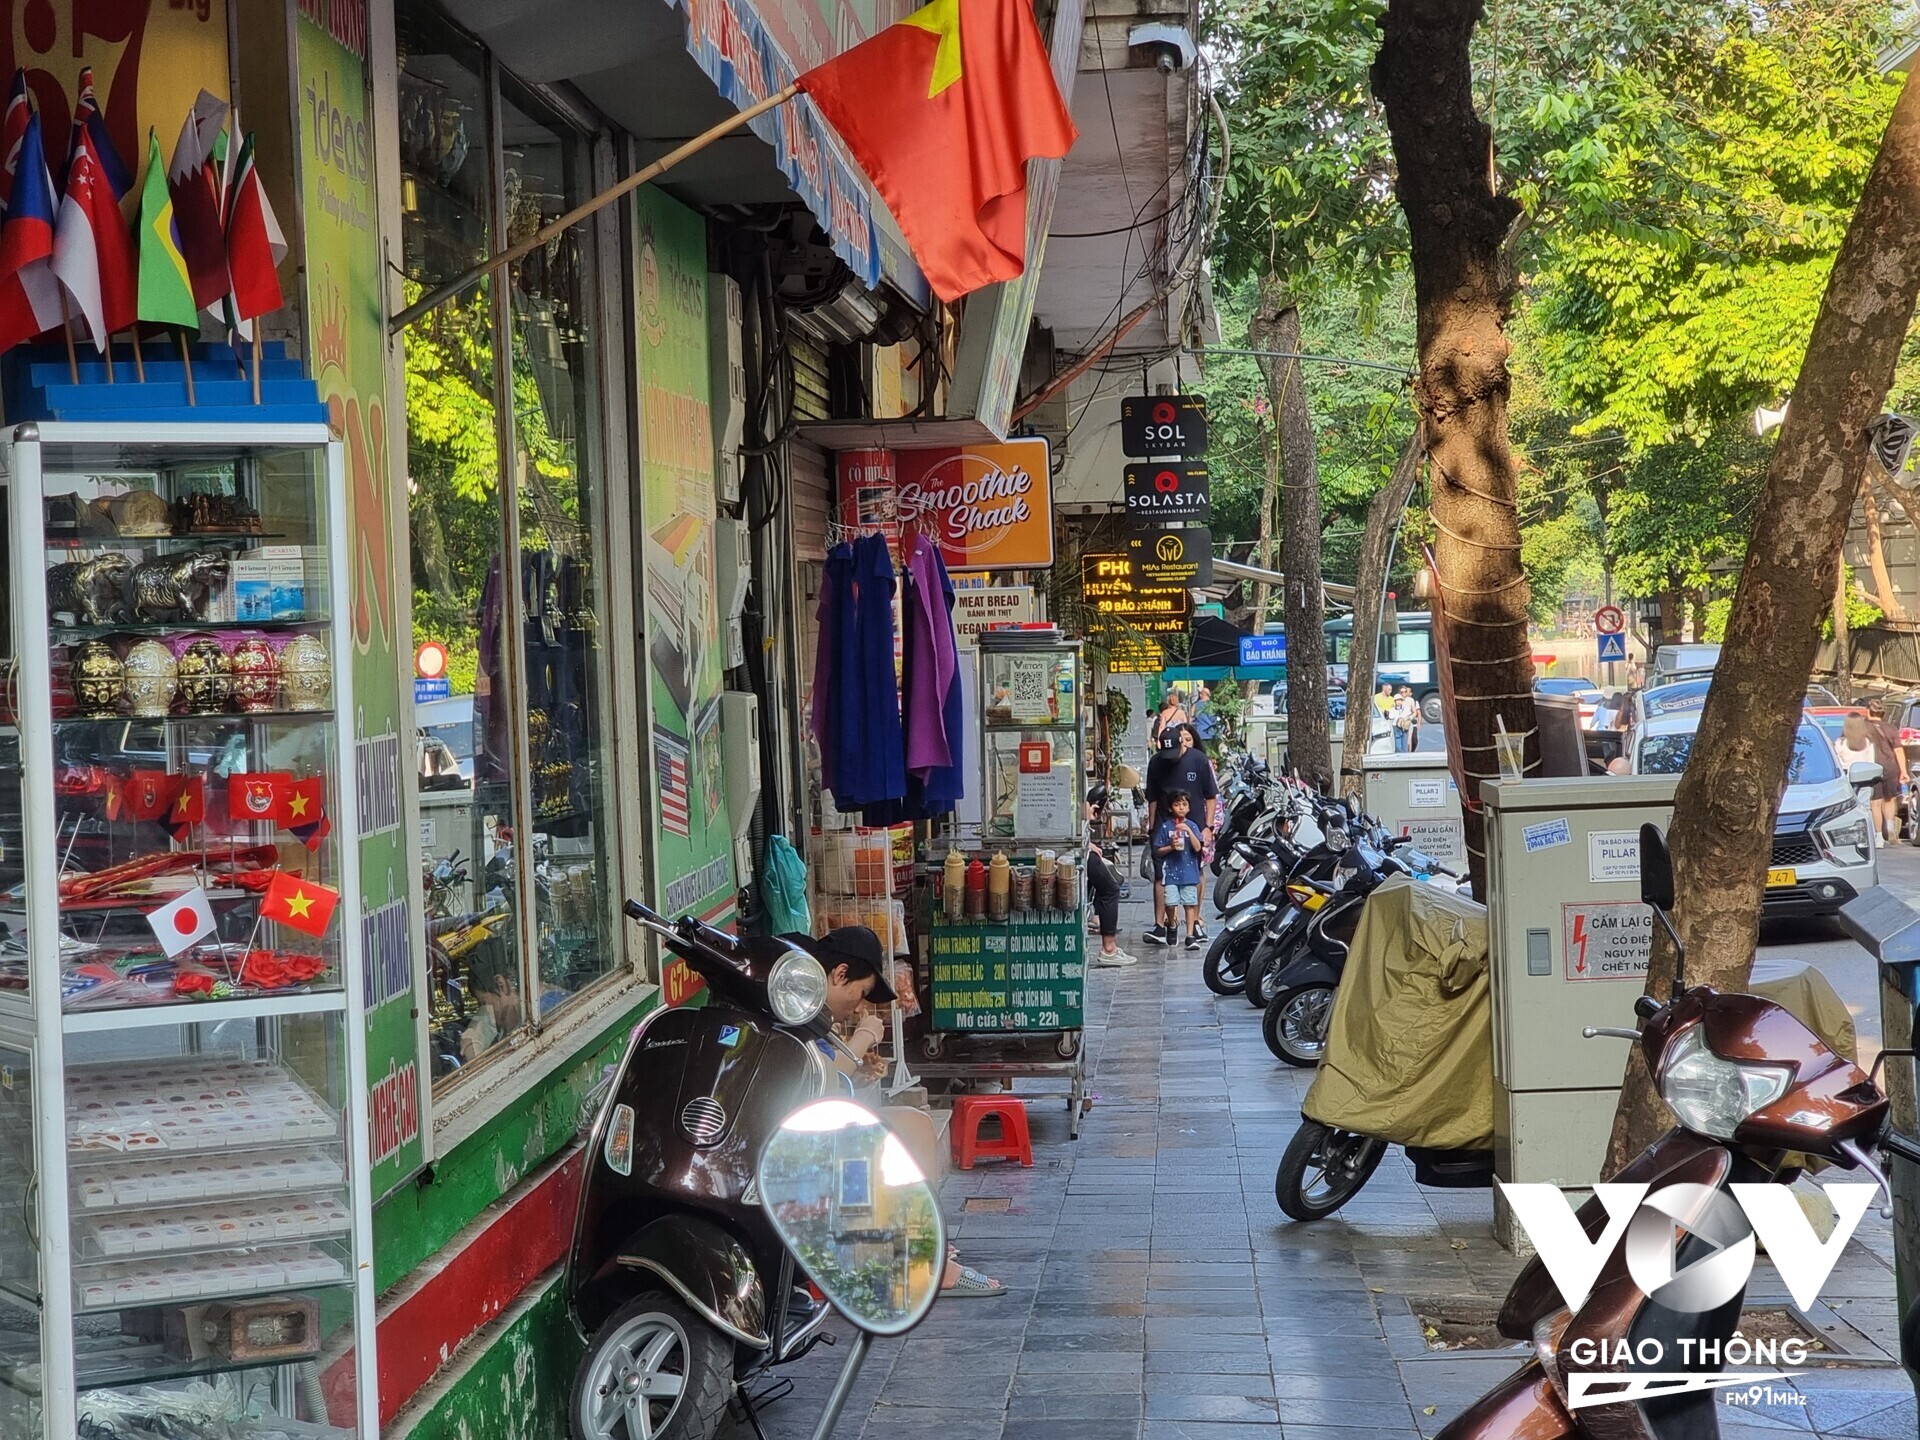 Đoạn vỉa hè trên phố Bảo Khánh (Hoàn Kiếm) chỉ còn lại 1 khoảng trống nhỏ cho người đi bộ. Phần lớn diện tích vỉa hè trở thành nơi để xe và nơi bán hàng của người dân.